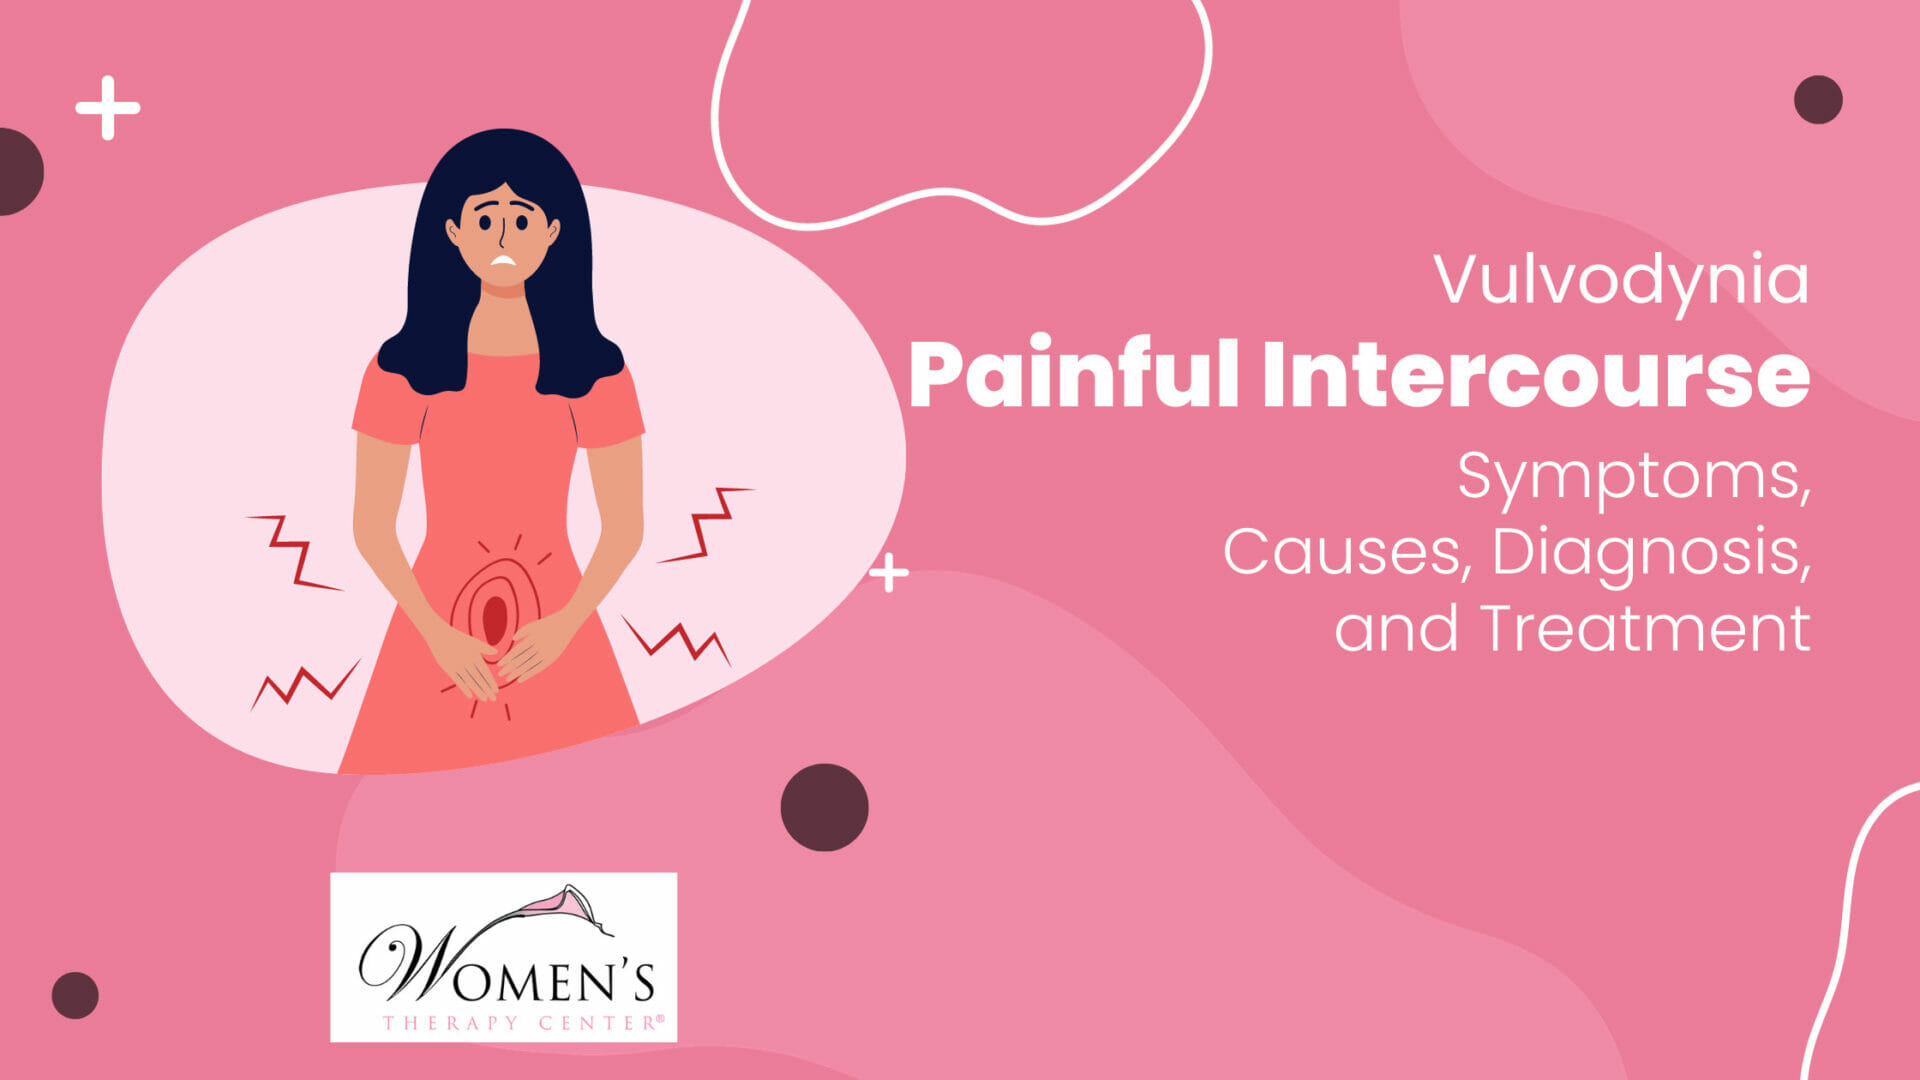 Femme souffrant de douleur pensant consulter un fournisseur de centre de santé pour femmes au sujet des symptômes de la vulvodynie et des options de traitement.